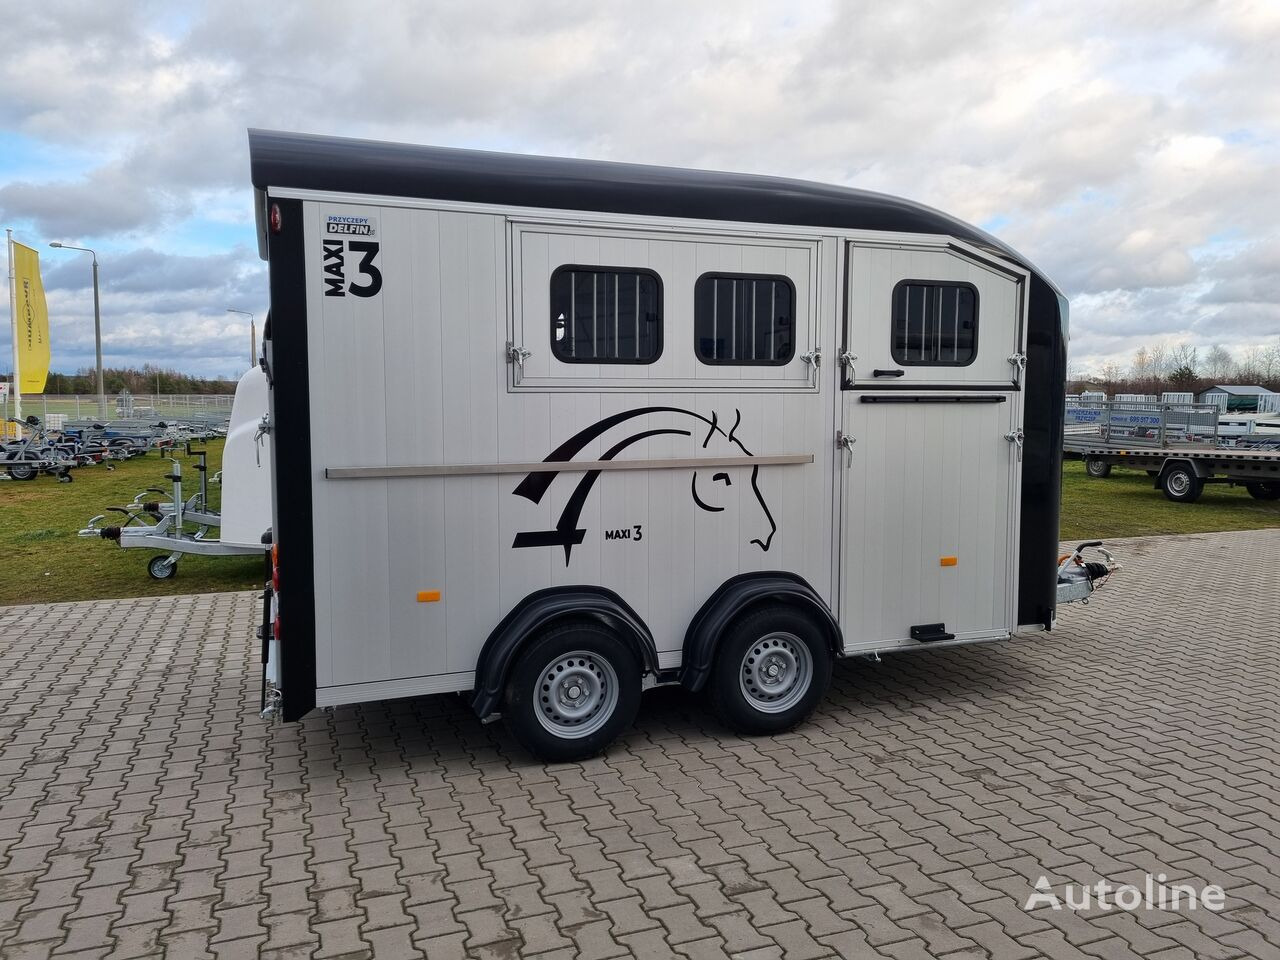 신규 말 트레일러 Cheval Liberté Maxi 3 Minimax trailer for 3 horses GVW 3500kg tack room saddle : 사진 16